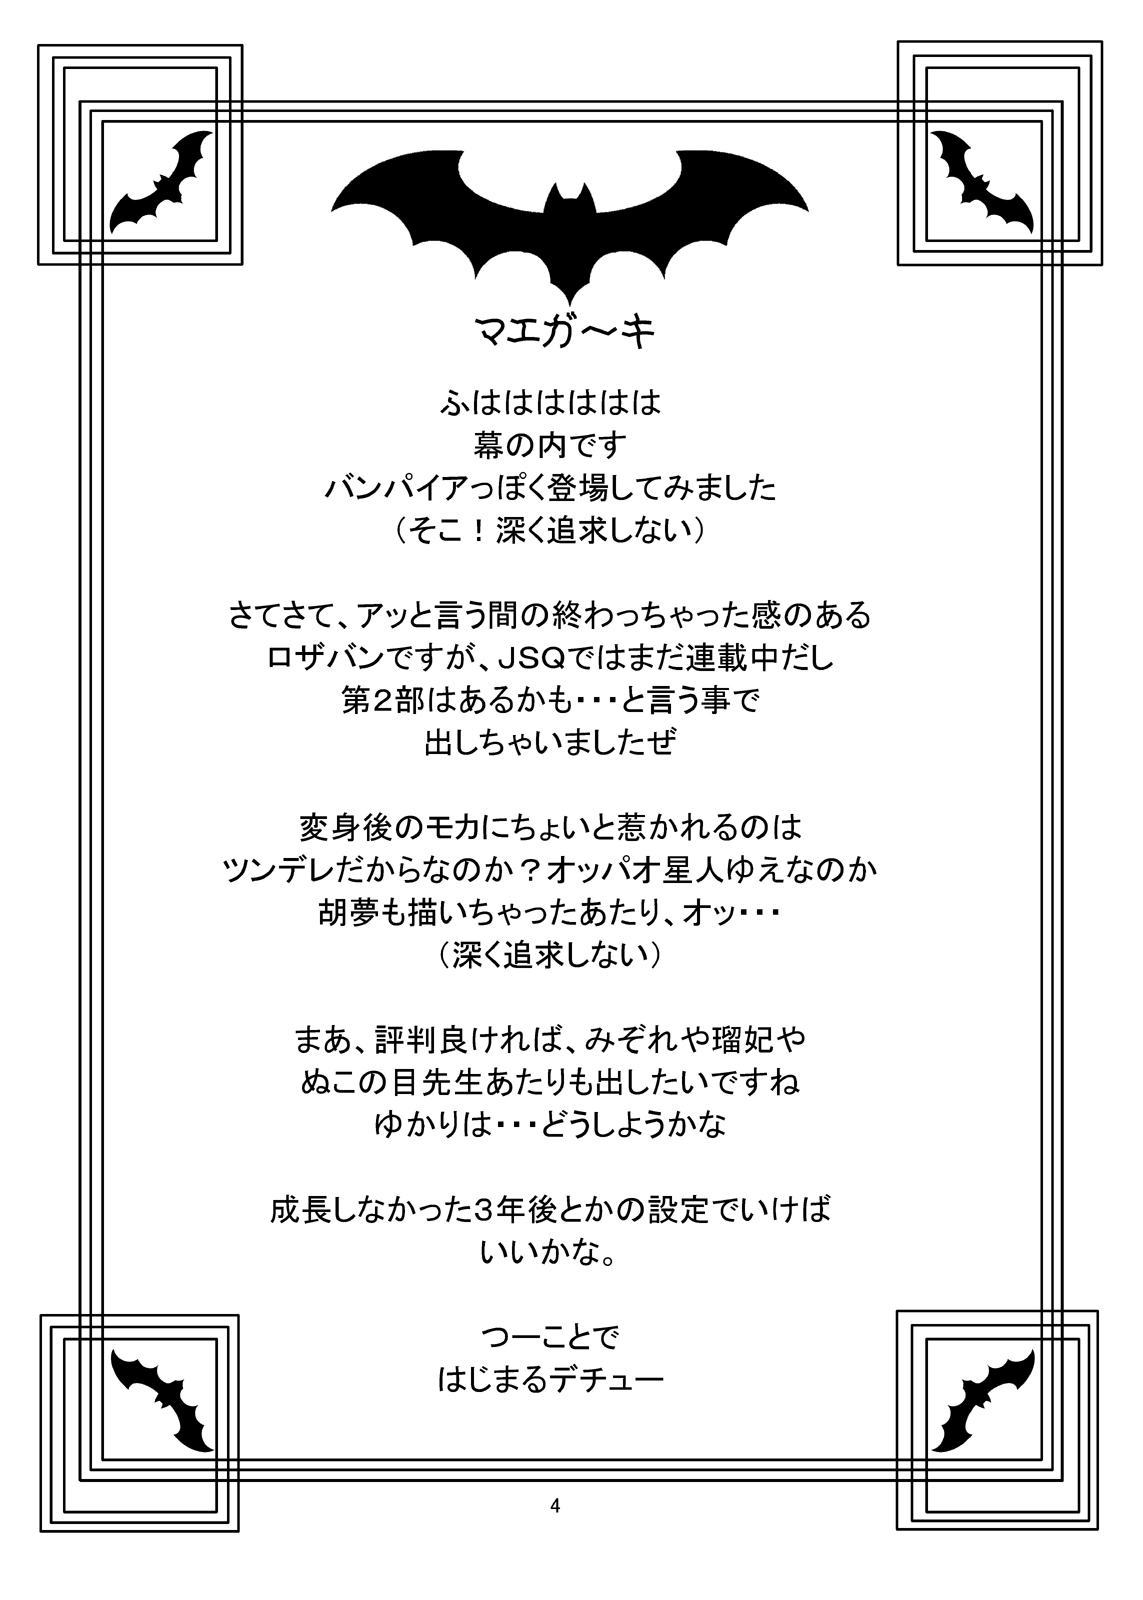 (COMIC1☆2) [Chandora & LUNCH BOX (Makunouchi Isami)] Moka & Mocha (Rosario + Vampire) (COMIC1☆2) [ちゃんどら & ランチBOX (幕の内勇)] もか&モカ (ロザリオとバンパイア)